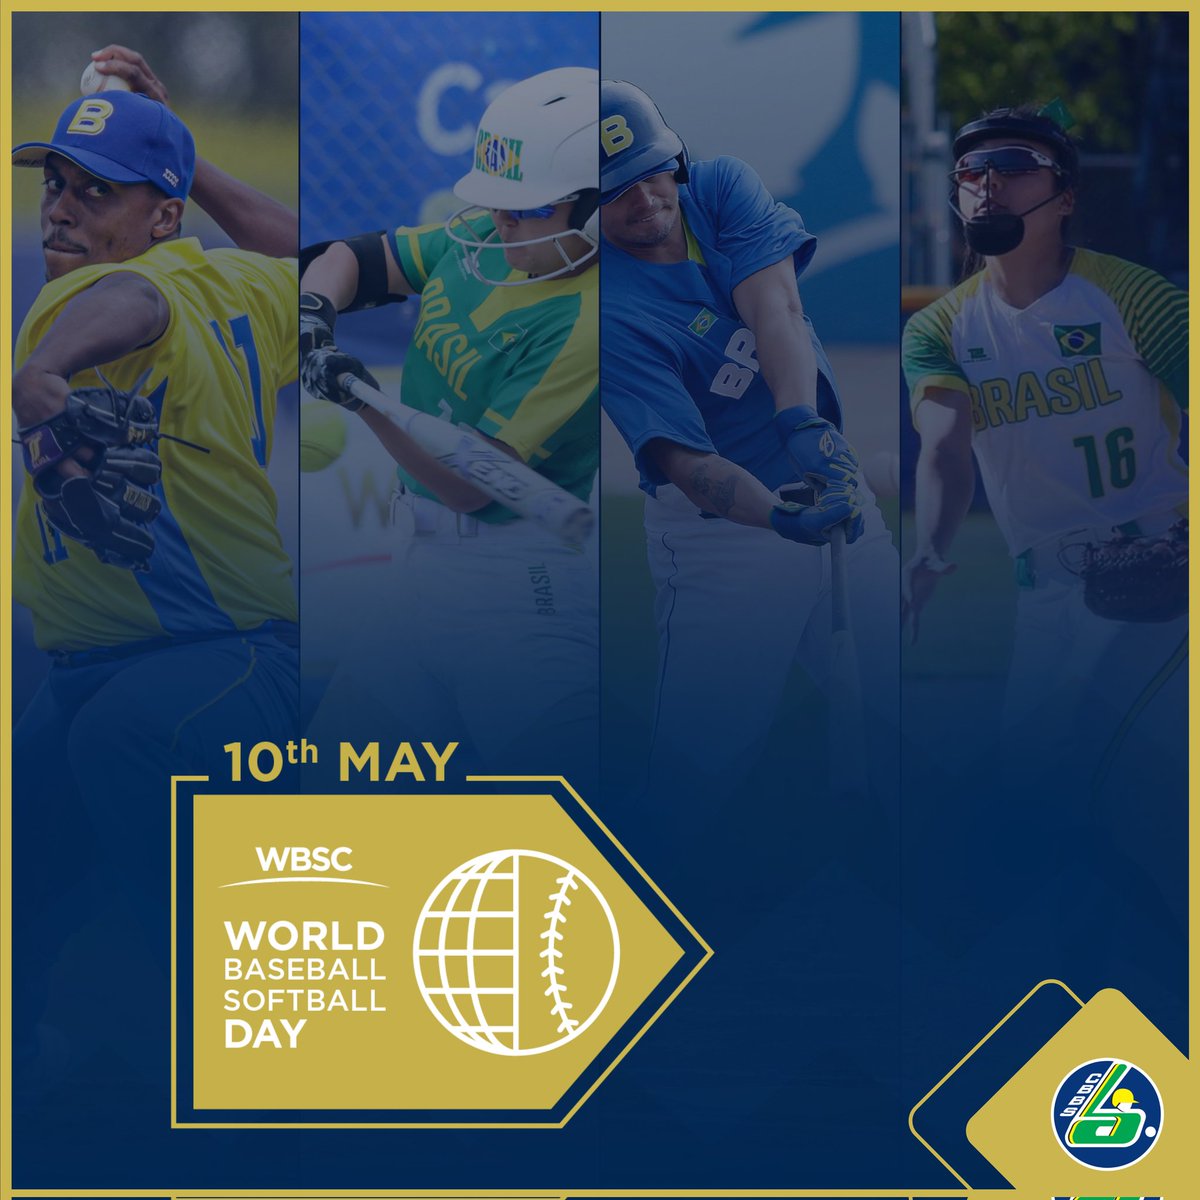 Hoje celebramos o Dia Mundial do Beisebol e Softbol! Nos juntamos a toda comunidade do beisebol e softbol para comemorar o 10º anivesário da WBSC e celebrarmos juntos nossas modalidades Feliz Dia Mundial do Beisebol e Softbol! #BaseballSoftballDay #WBSD #CBBS